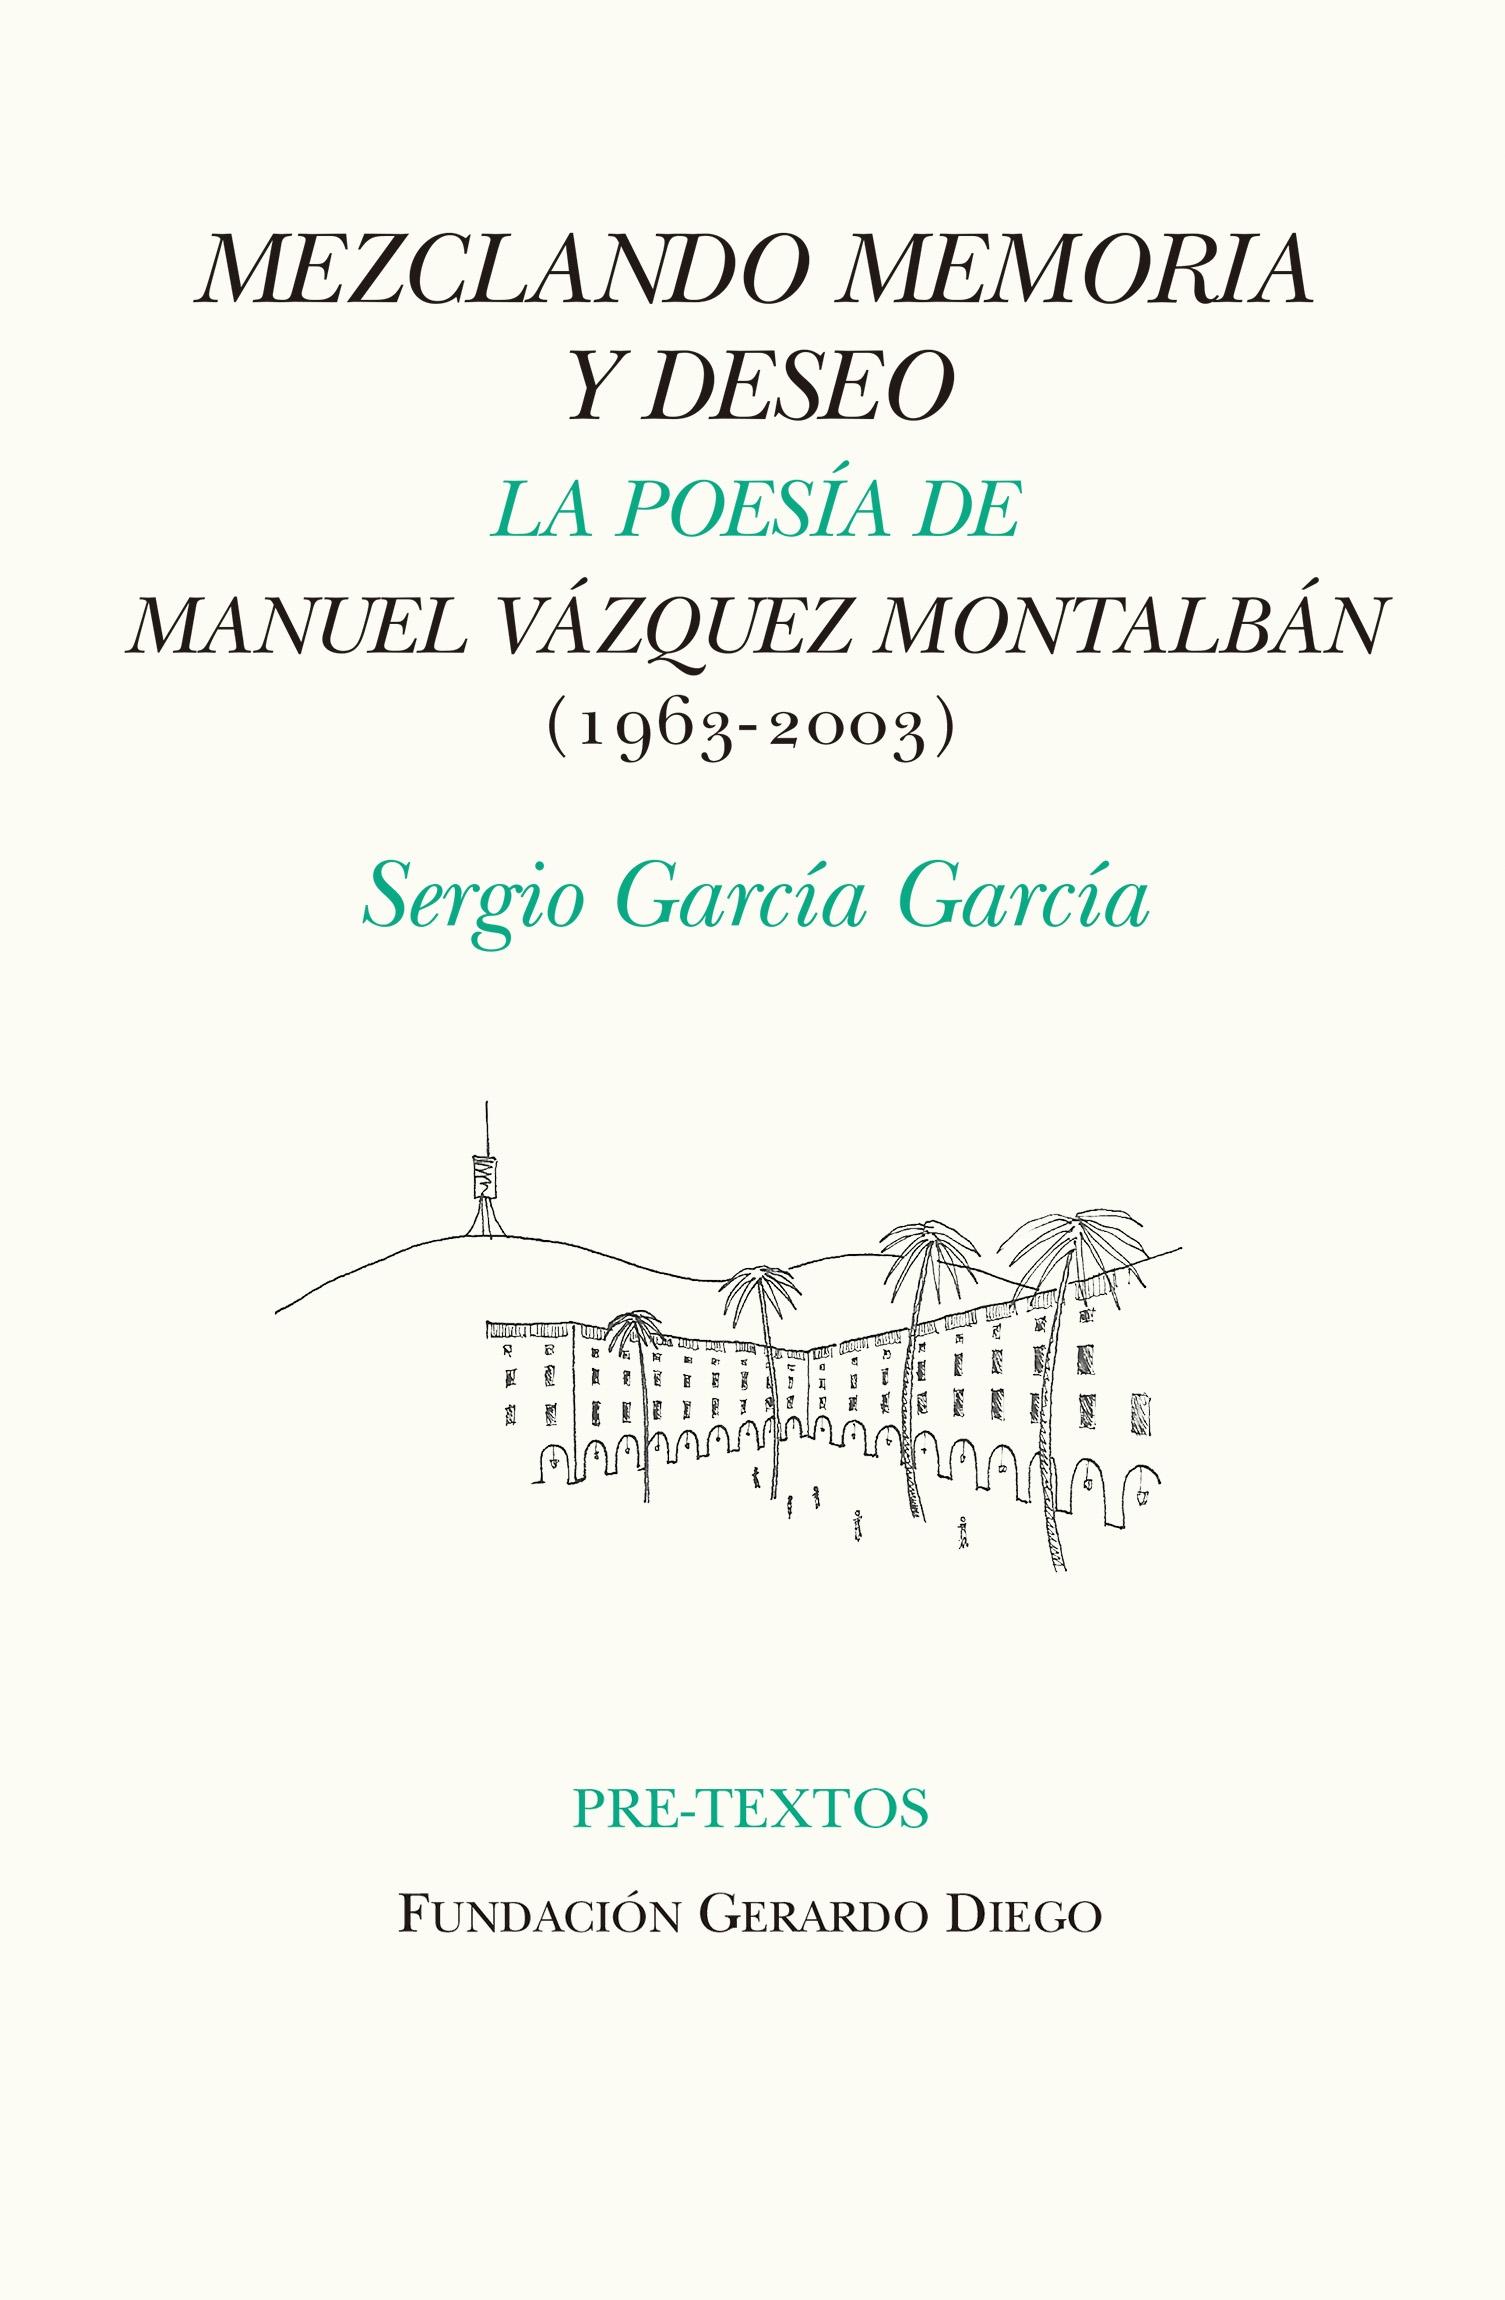 Mezclando Memoria y Deseo "La Poesía de Manuel Vázquez Montalbán (1963-2003)". 